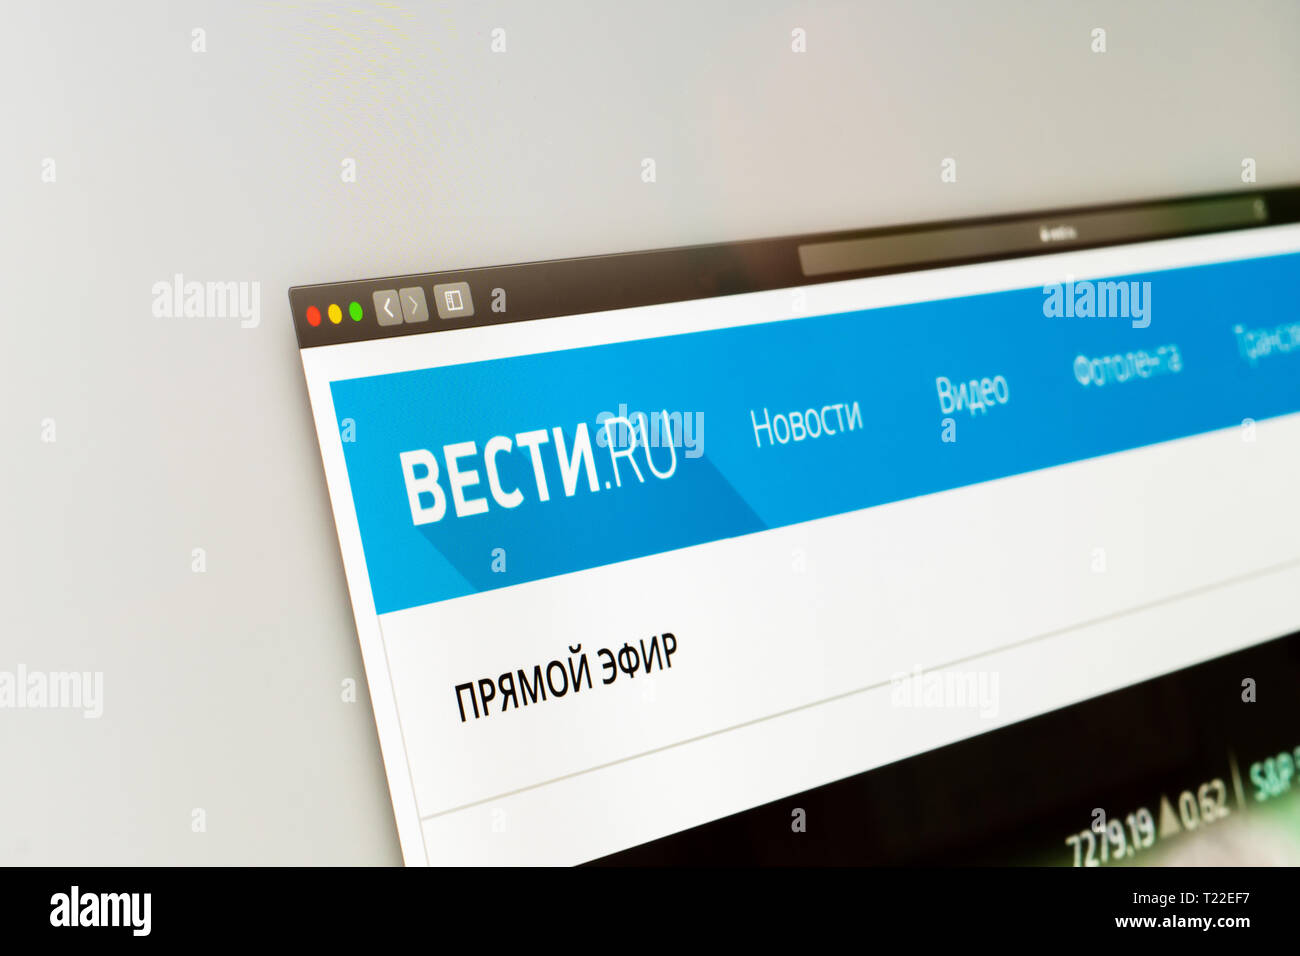 Vesti.ru Nachrichten Web site homepage. Nahaufnahme von Vesti.ru Logo. Сan als Illustration für andere Medien oder Websites genutzt werden. Marketing Konzept Stockfoto